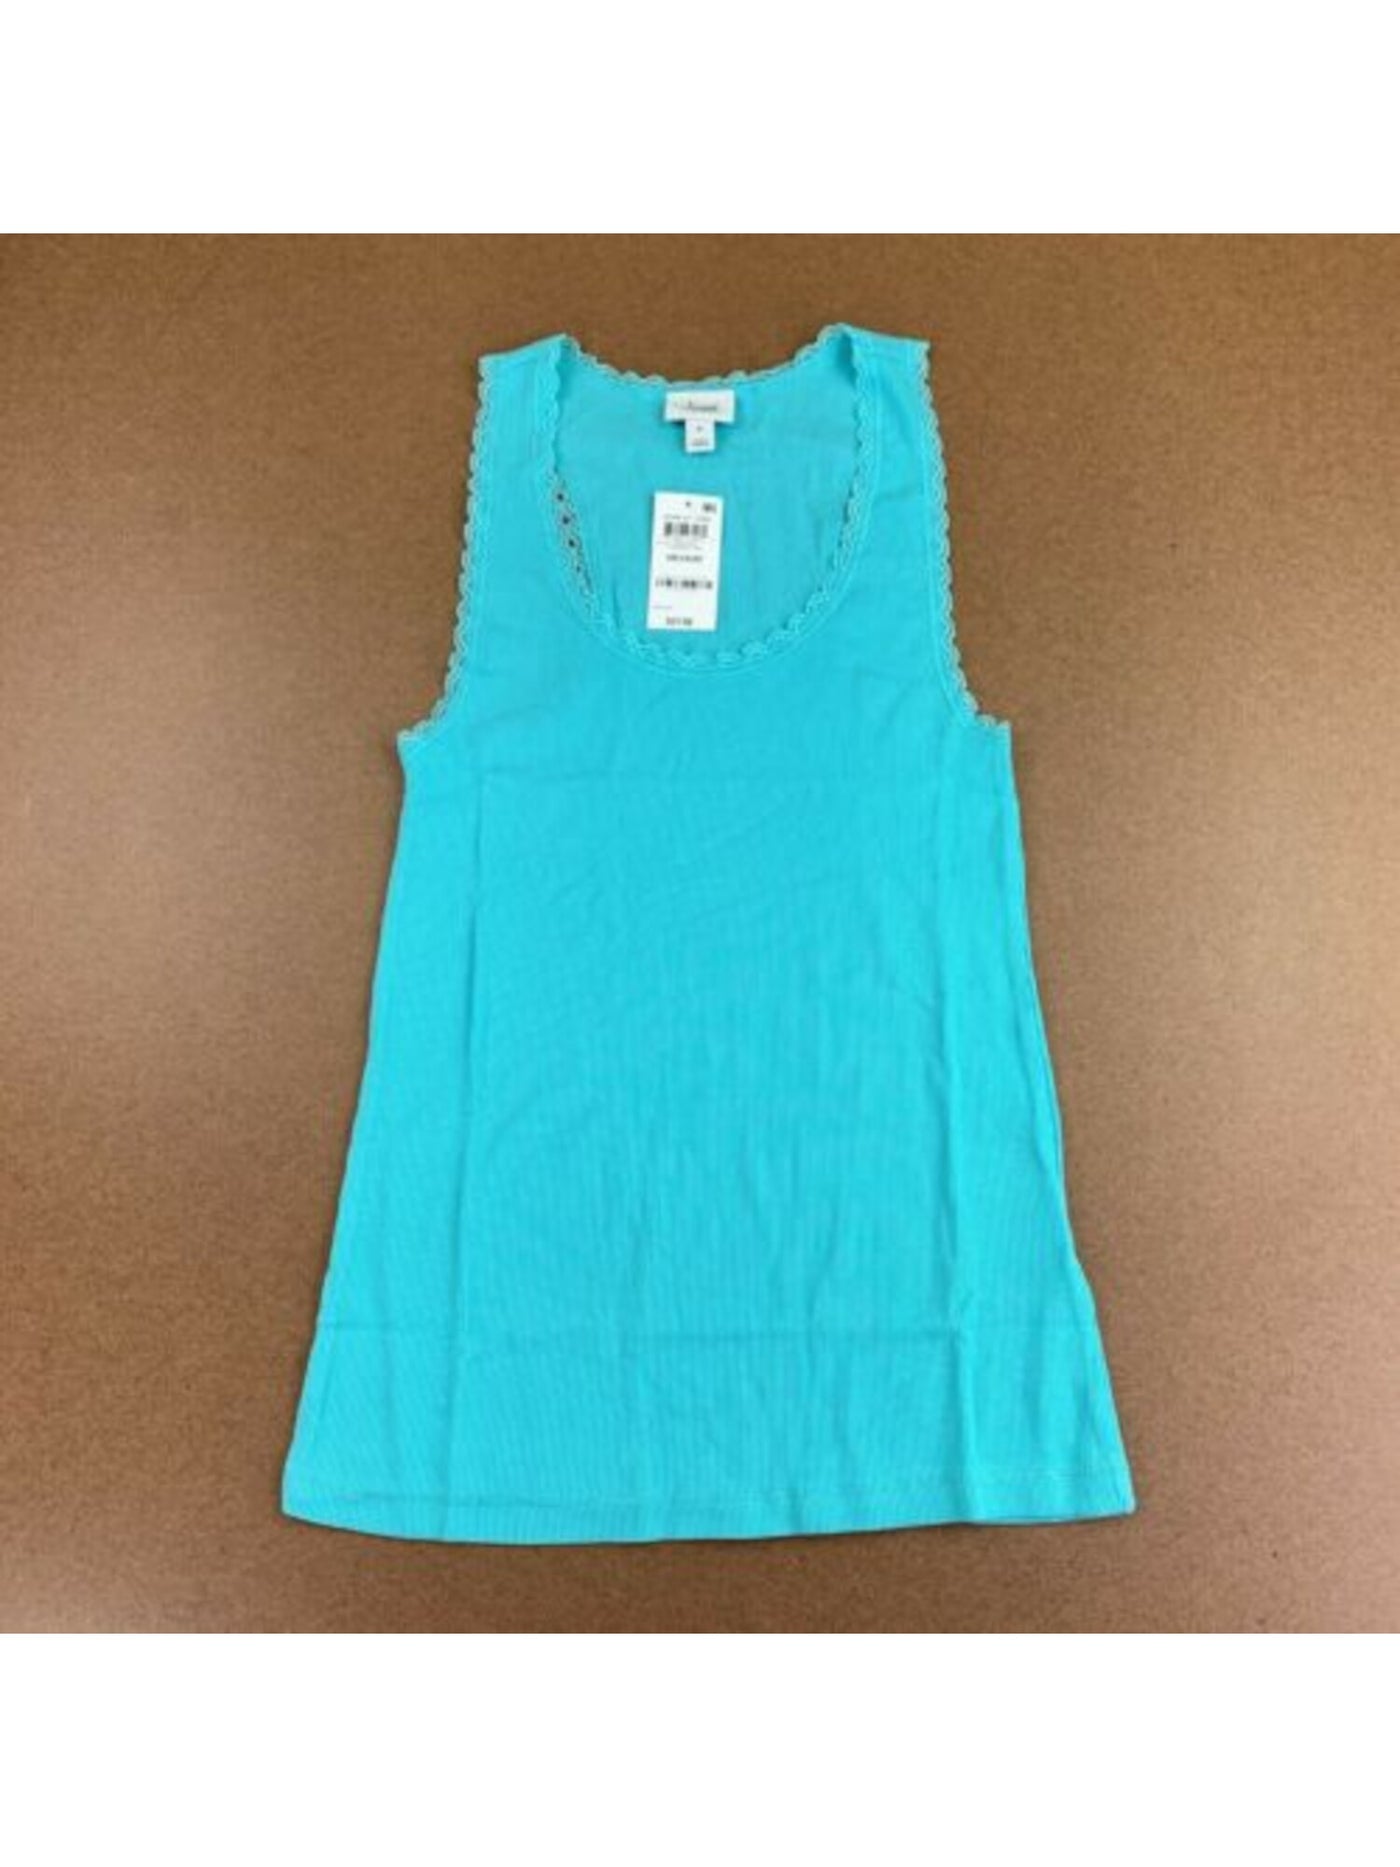 JENNI Intimates Turquoise Sleepwear Shirt Size: S